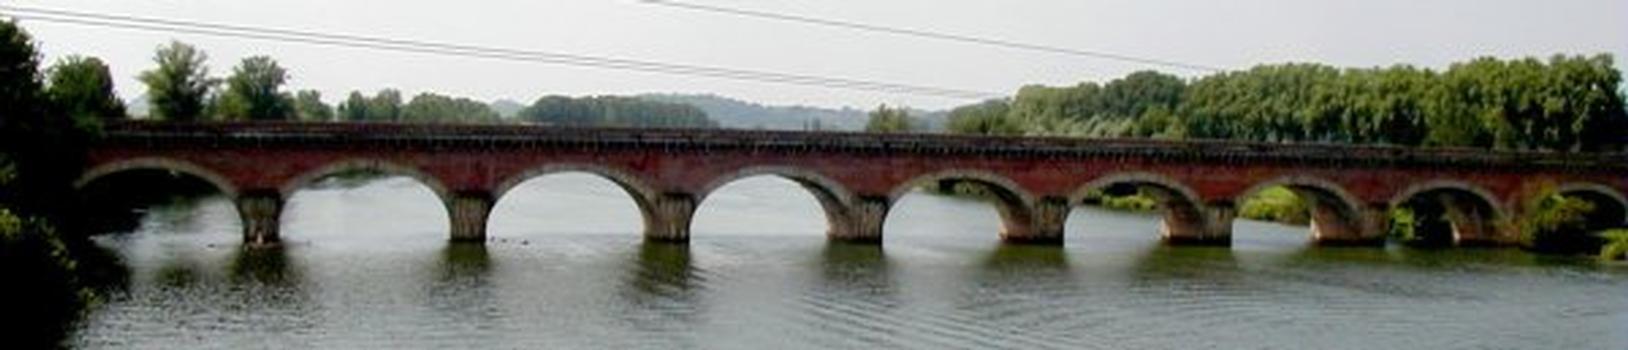 Cacor-Kanalbrücke in Moissac